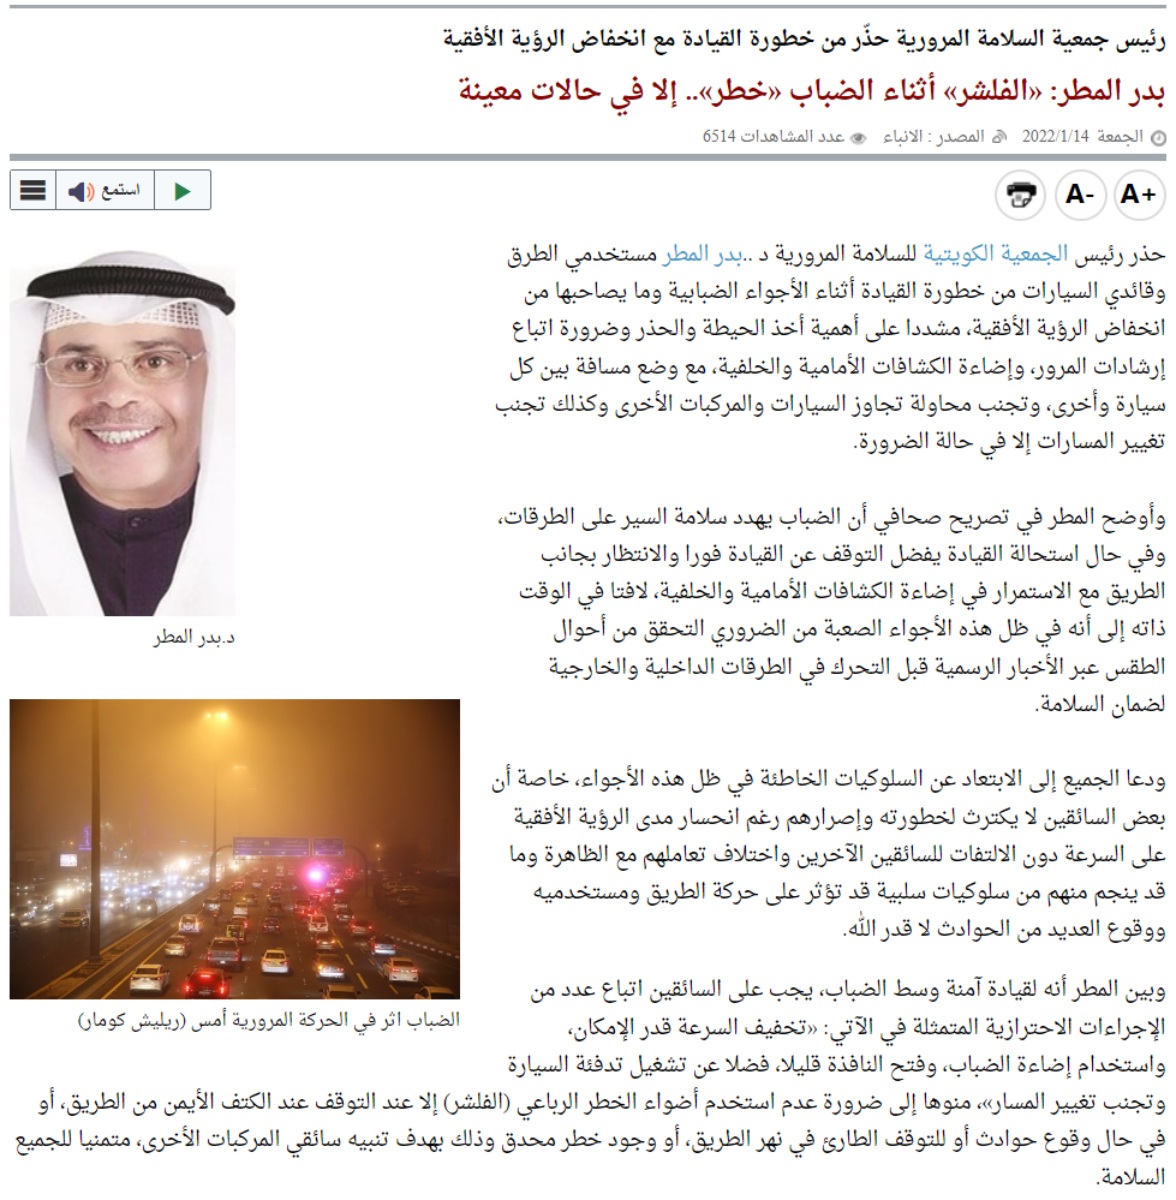 لماذا المرور السعودي يسمح باستخدام الأضواء التحذيرية “فلشر” بينما في بقية الدول العربية ودول العالم تعتبر مخالفة؟ 9